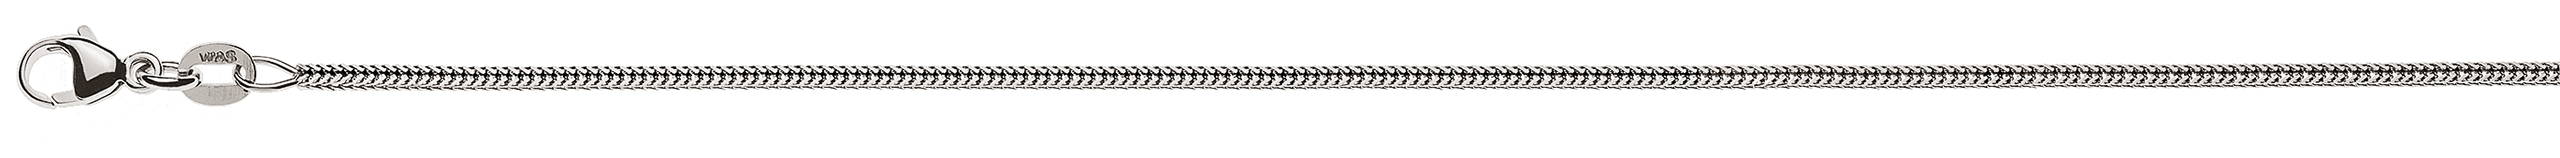 AURONOS Prestige Necklace white gold 18K foxtail diamond 45cm 1.2mm